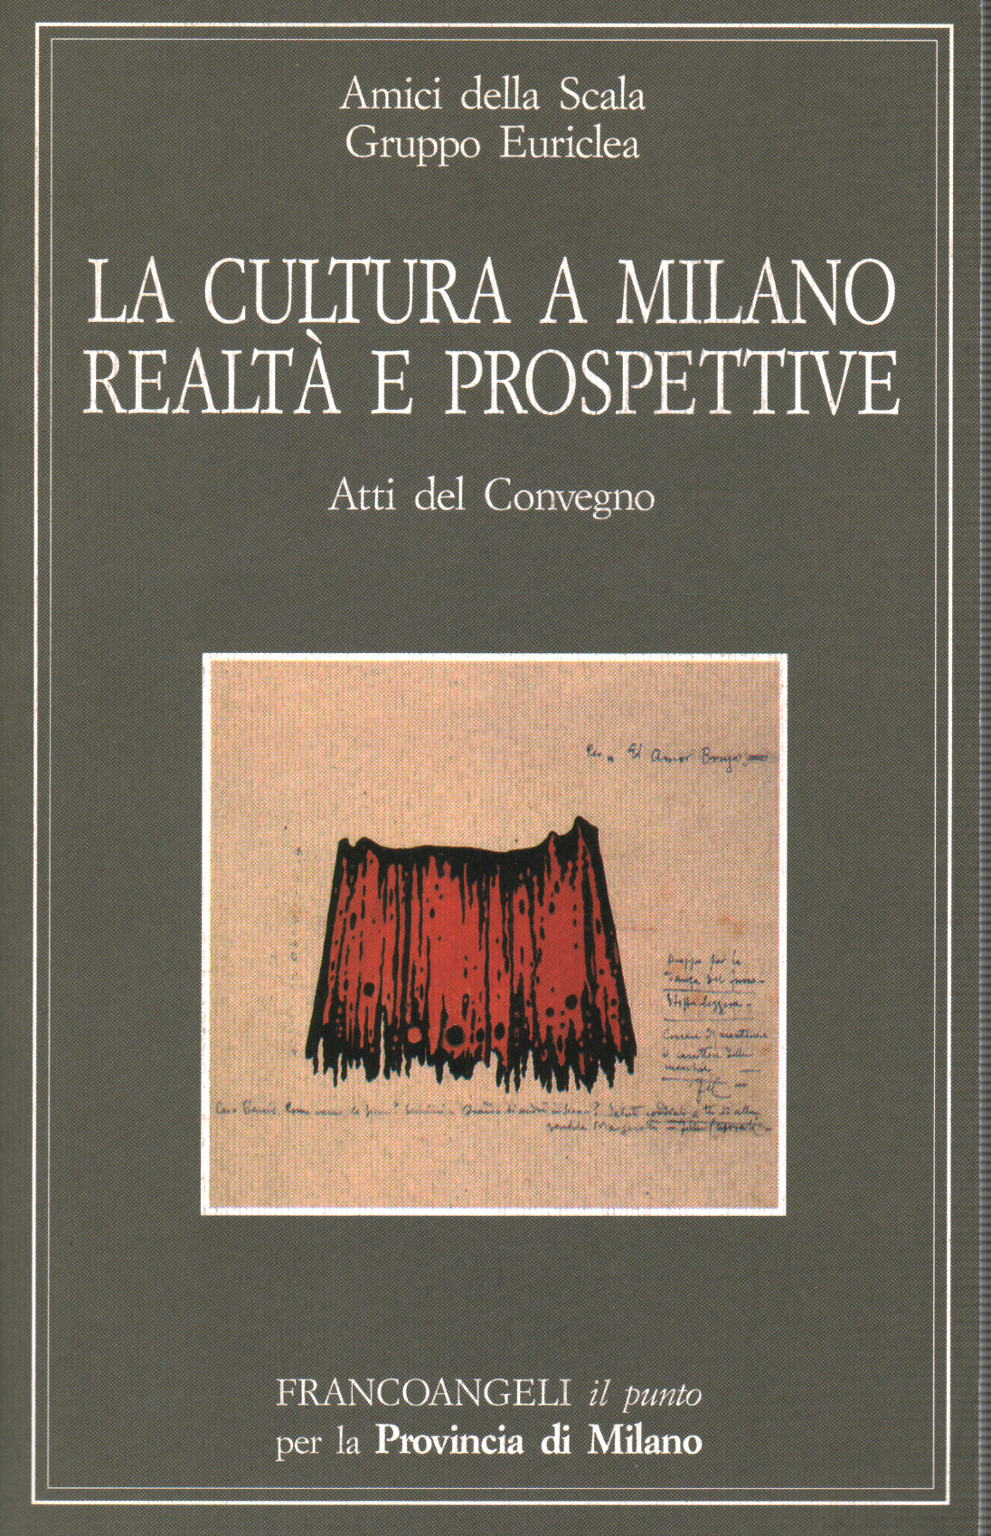 La cultura a Milano Realtà e prospettive, s.a.